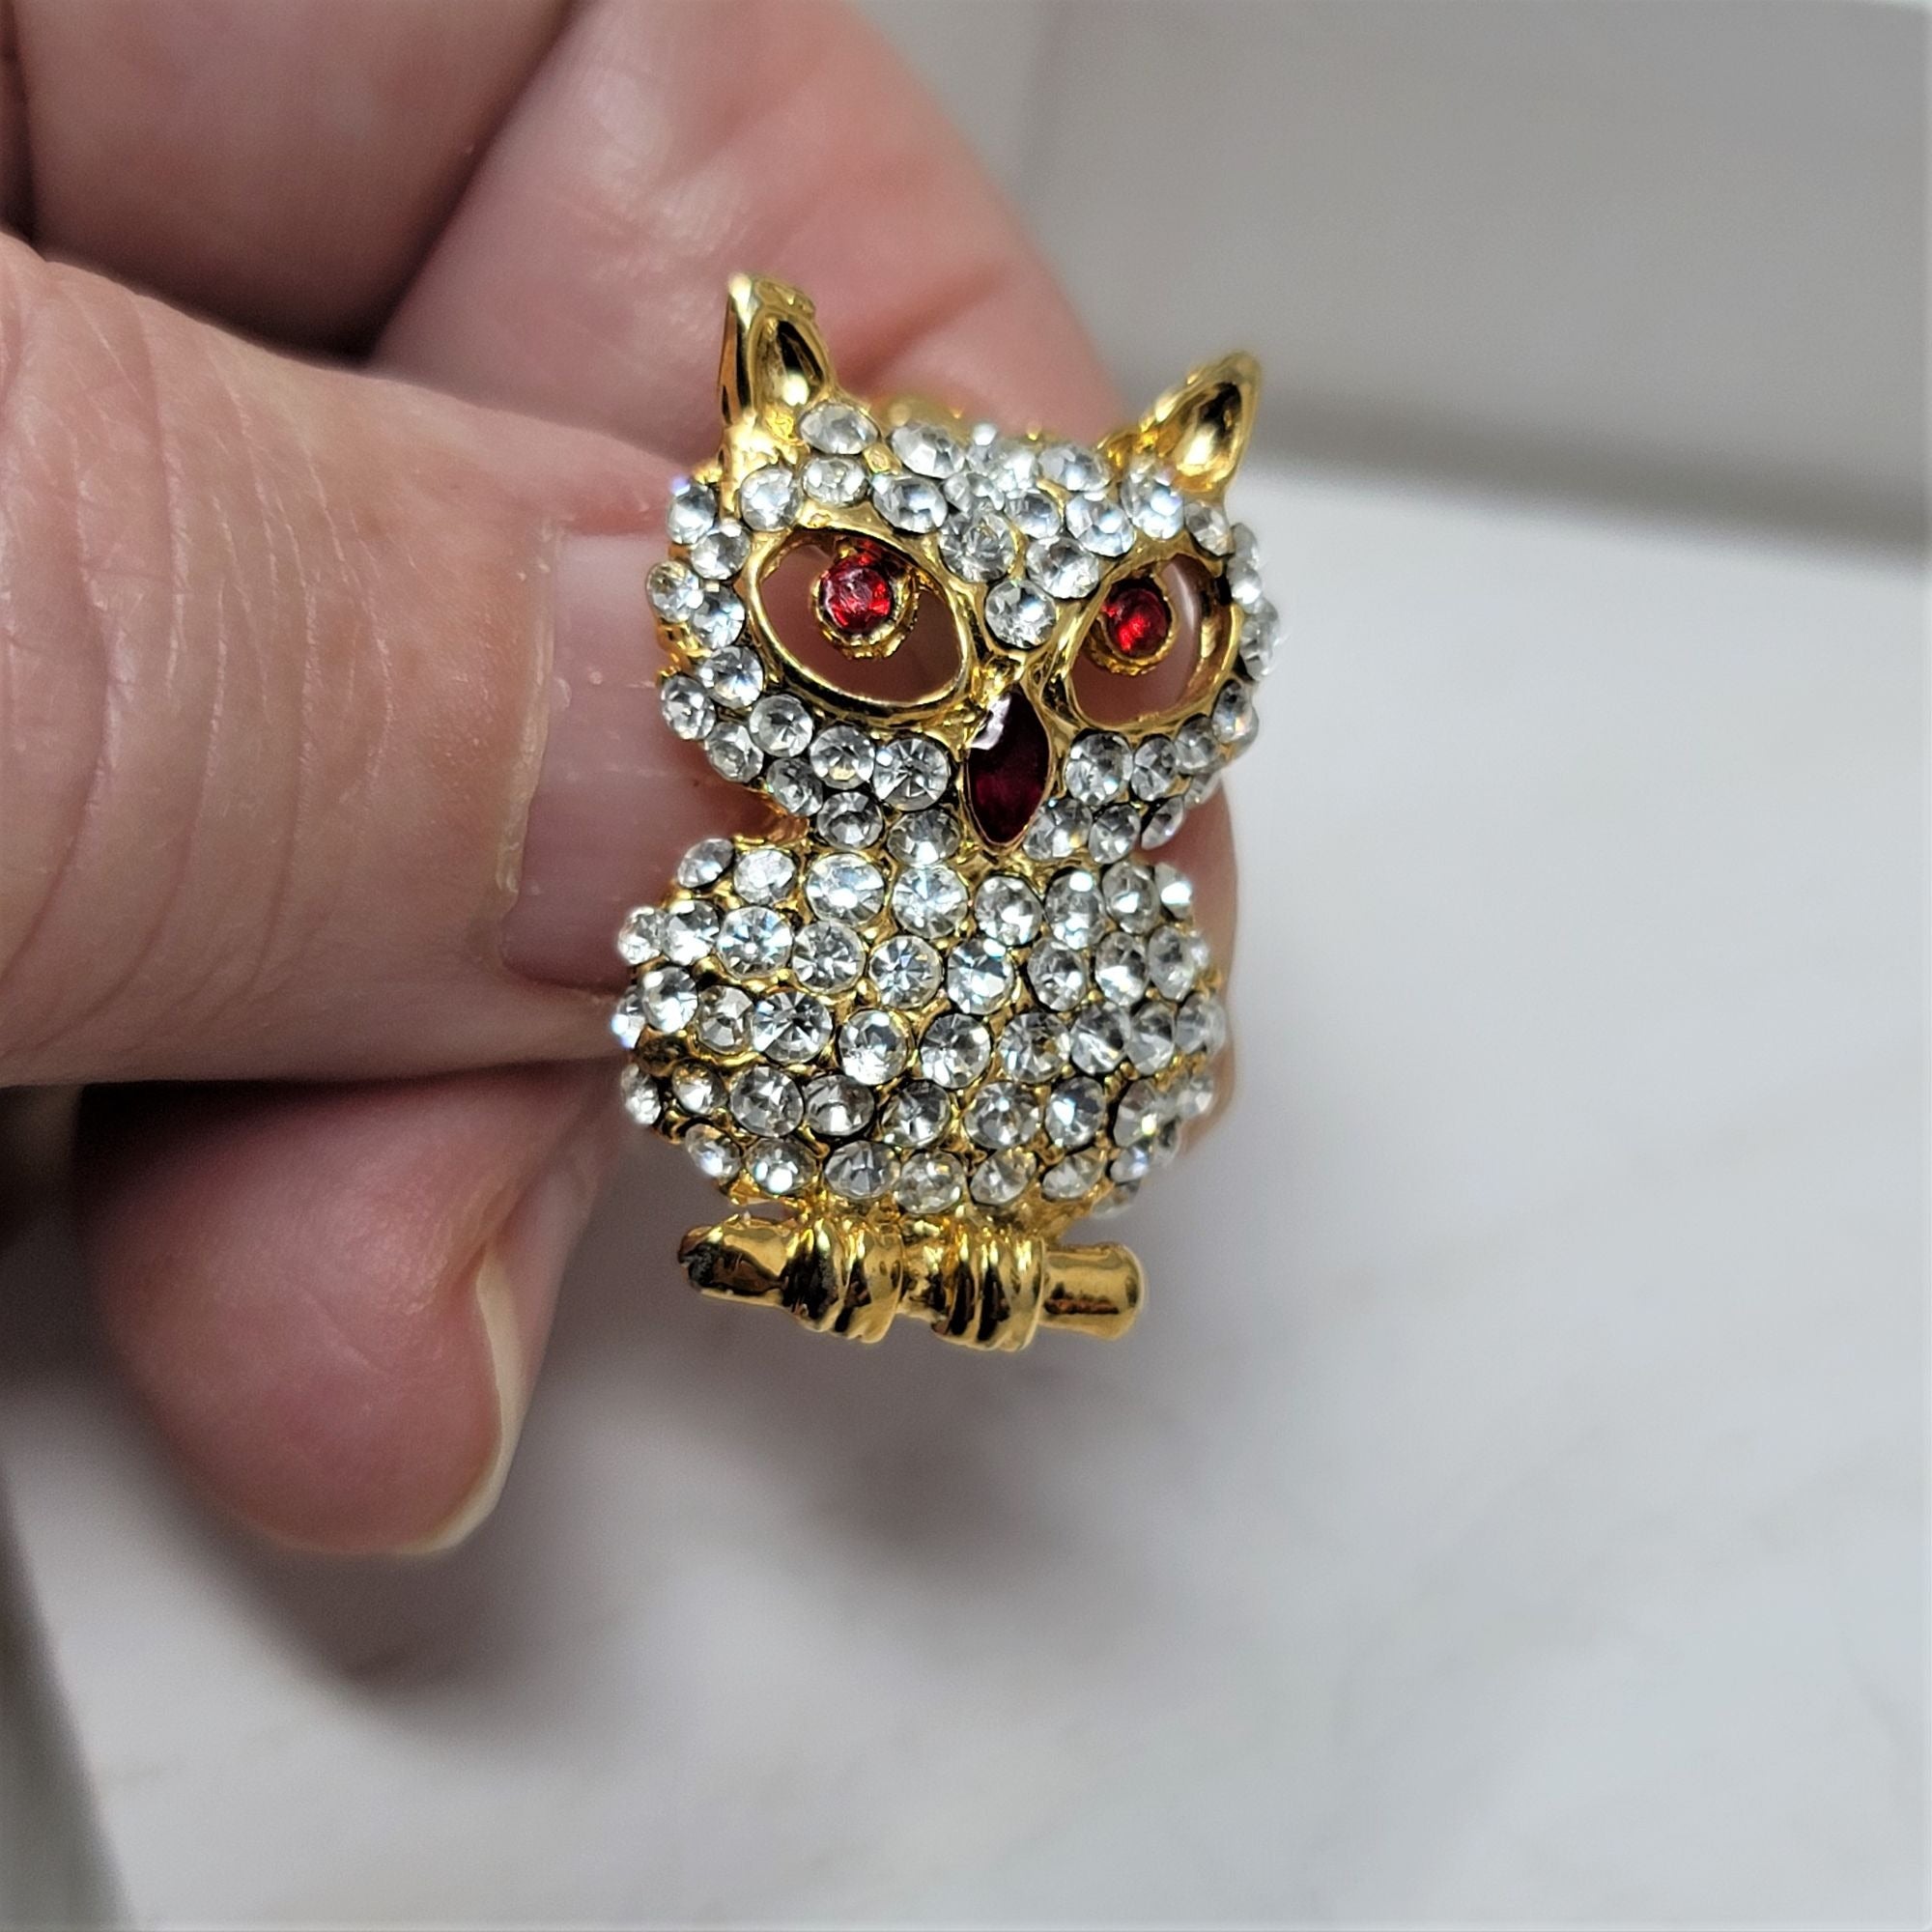 Sparkling Rhinestone Owl Pin Brooch Ruby Eyes